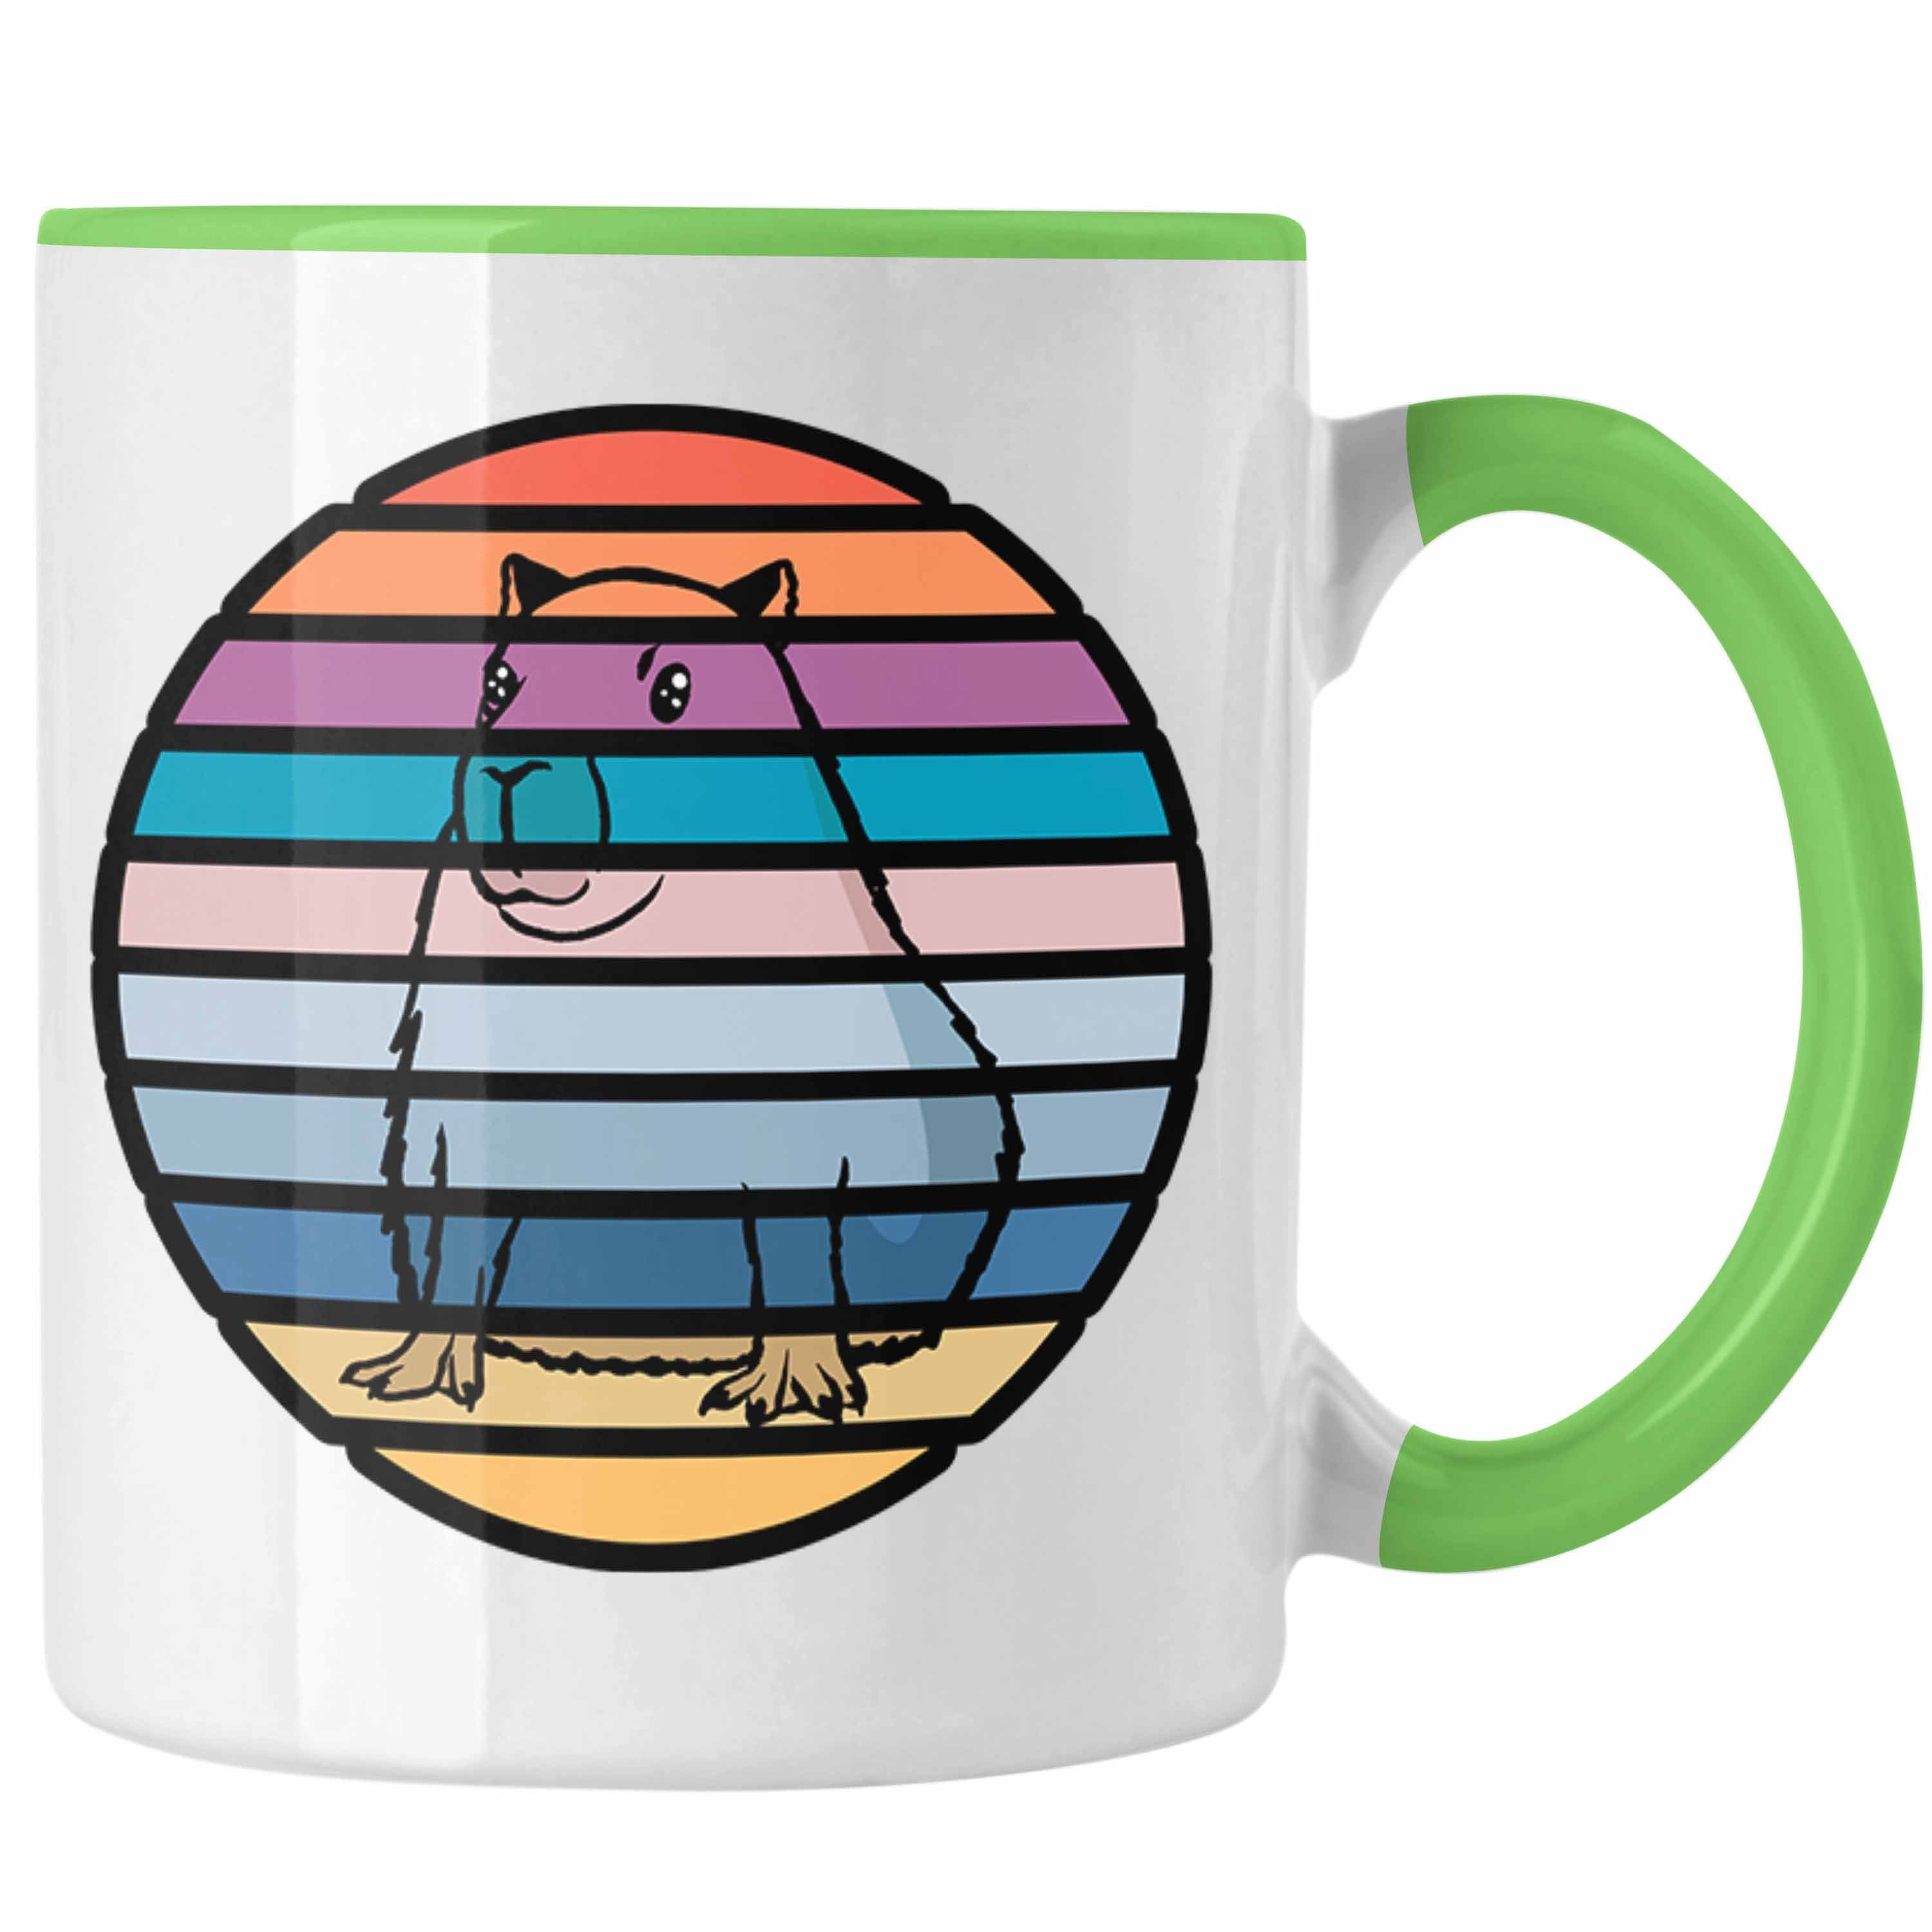 Trendation für Liebhaber Tasse Geschenk Tasse mit Geschenkidee Capybara-Motiv Grün Capybara